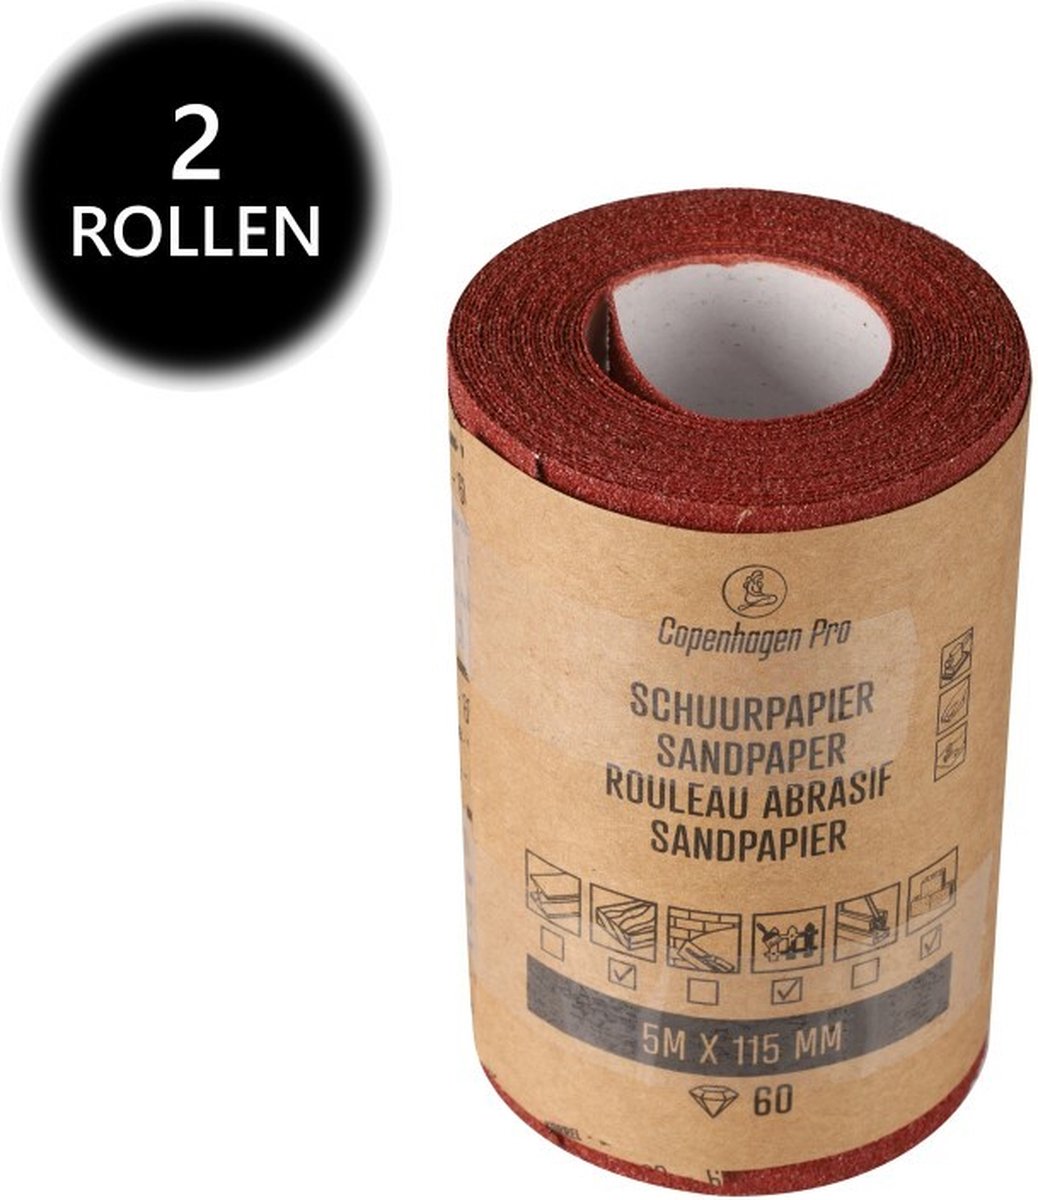 Copenhagen Pro schuurpapier op rol - 2 rollen - droog - korrel 60 - 11.5 cm x 5 meter